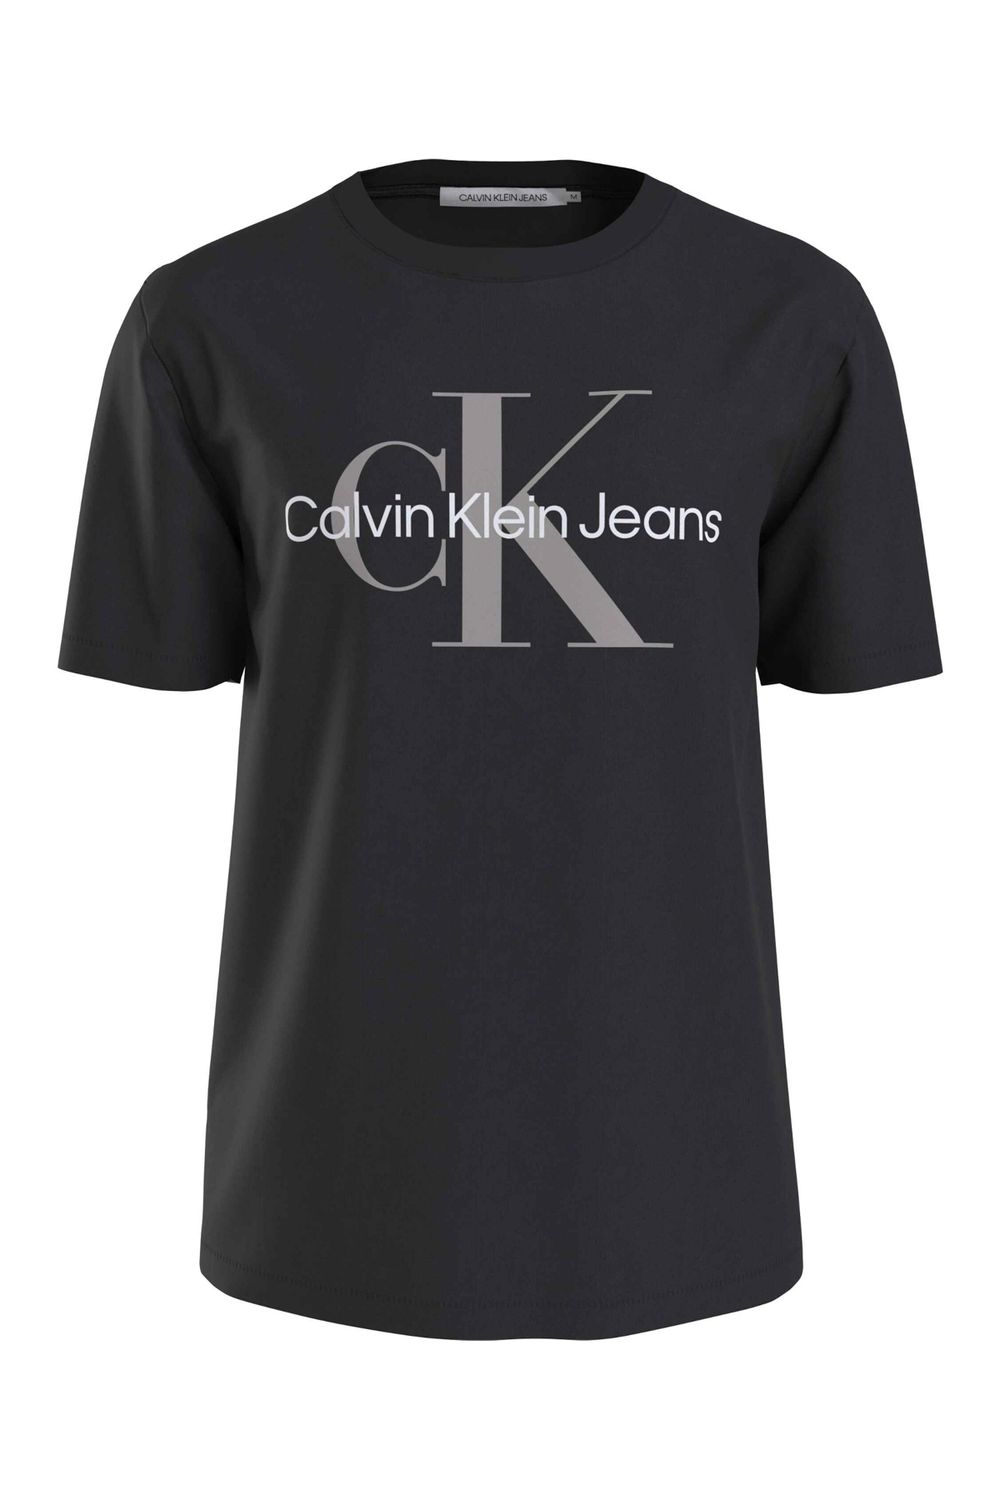 Calvin Klein T-Shirt Herren Ck Schwarz/Porpoise - Trendyol